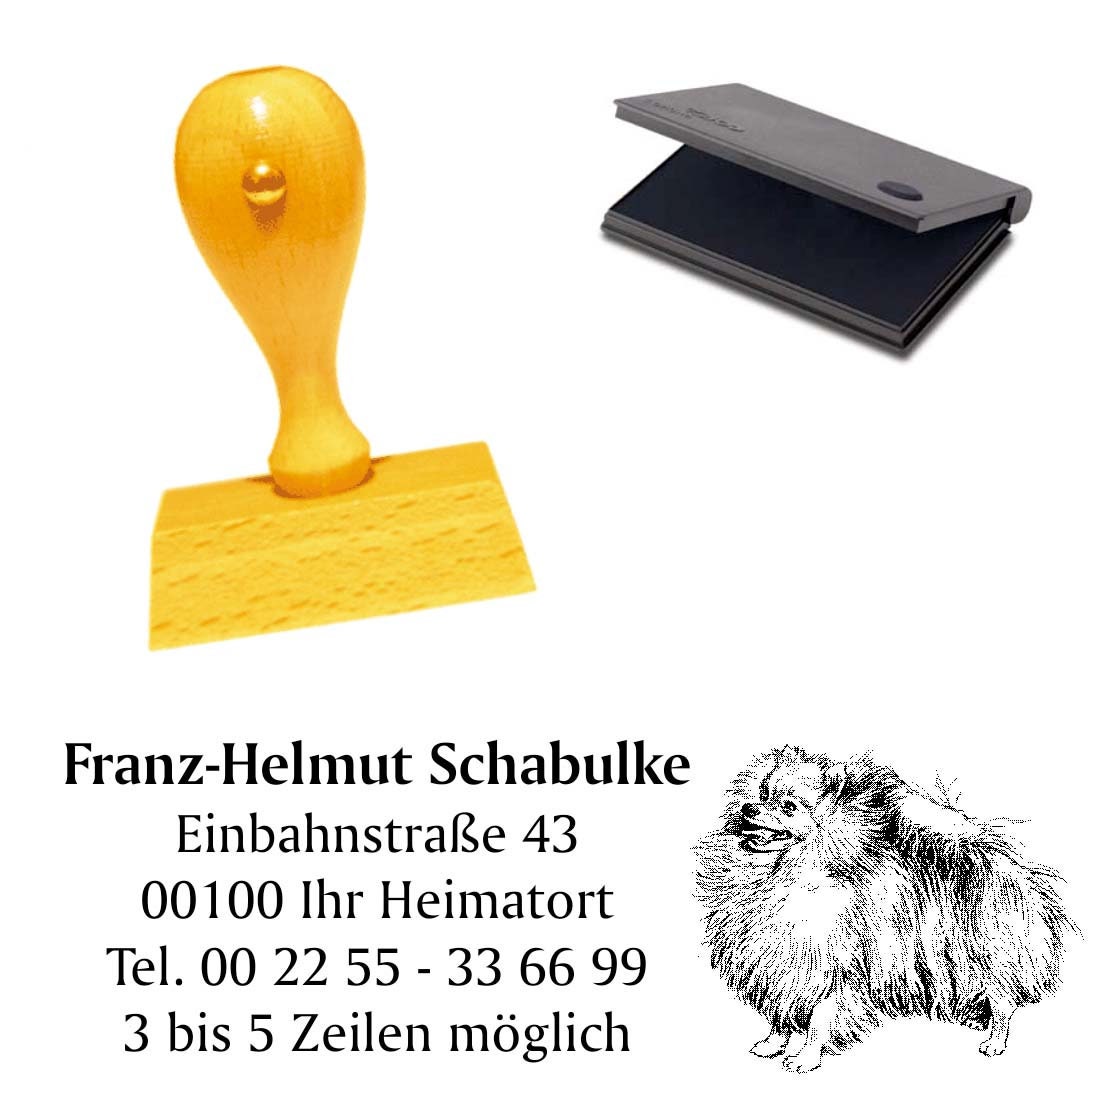 Stempel « ZWERGSPITZ » Adressenstempel Motiv kleiner Hund Spitz Pomeranian dog 